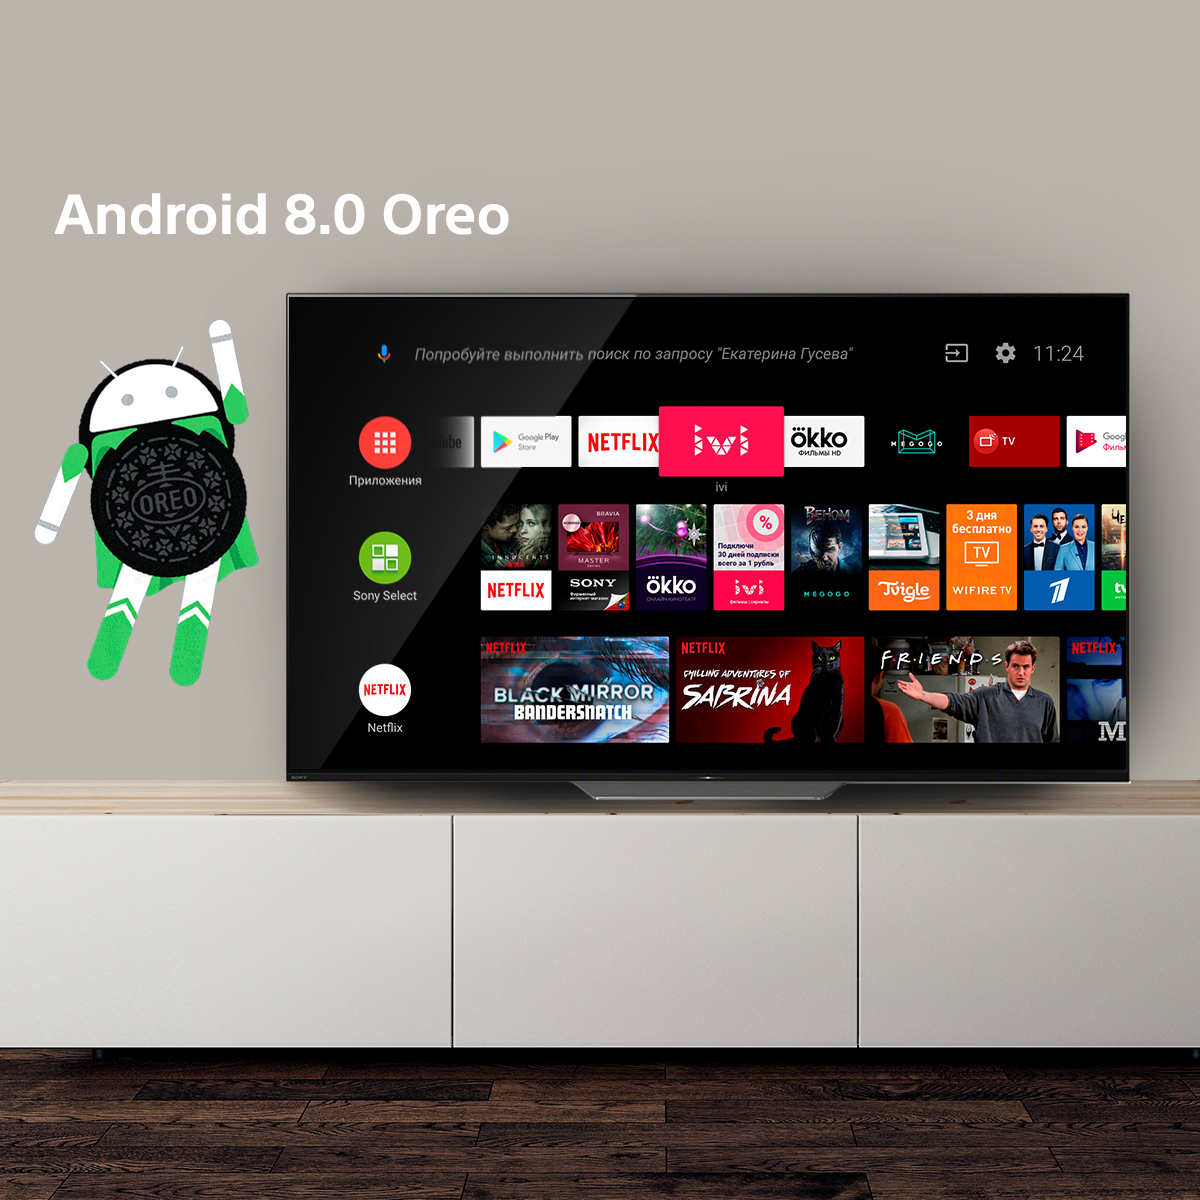 Sony телевизоры андроиде. Sony Smart TV Android. Android TV 9.0. Android TV Интерфейс. Андроид ТВ сони бравиа.